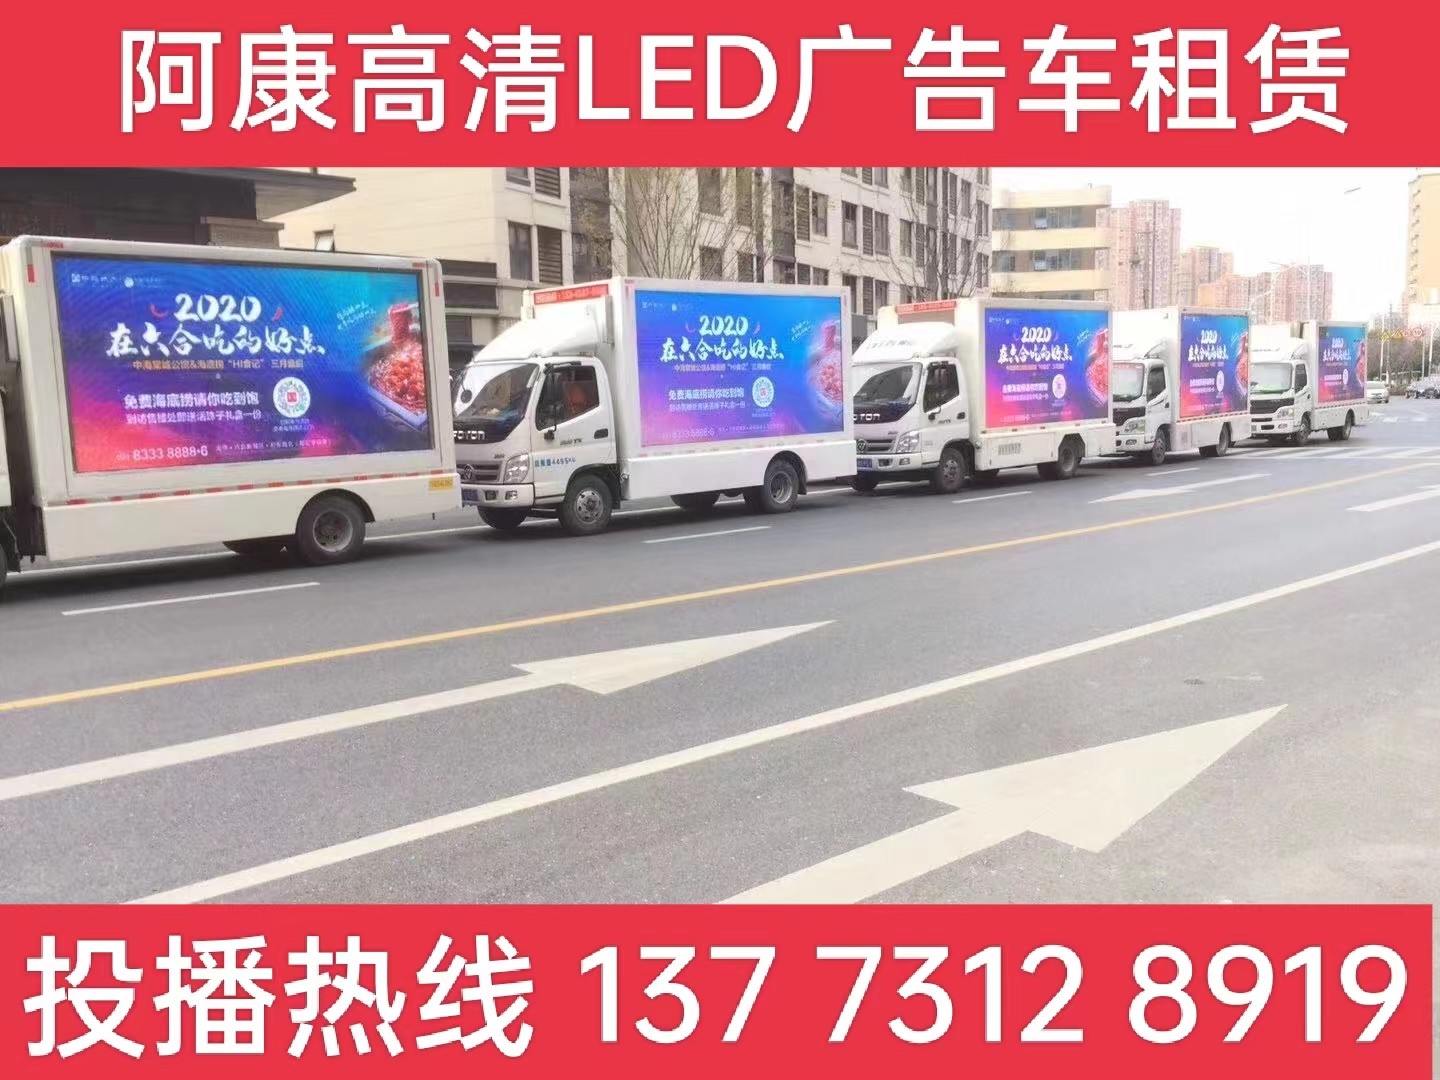 扬州宣传车出租-海底捞LED广告